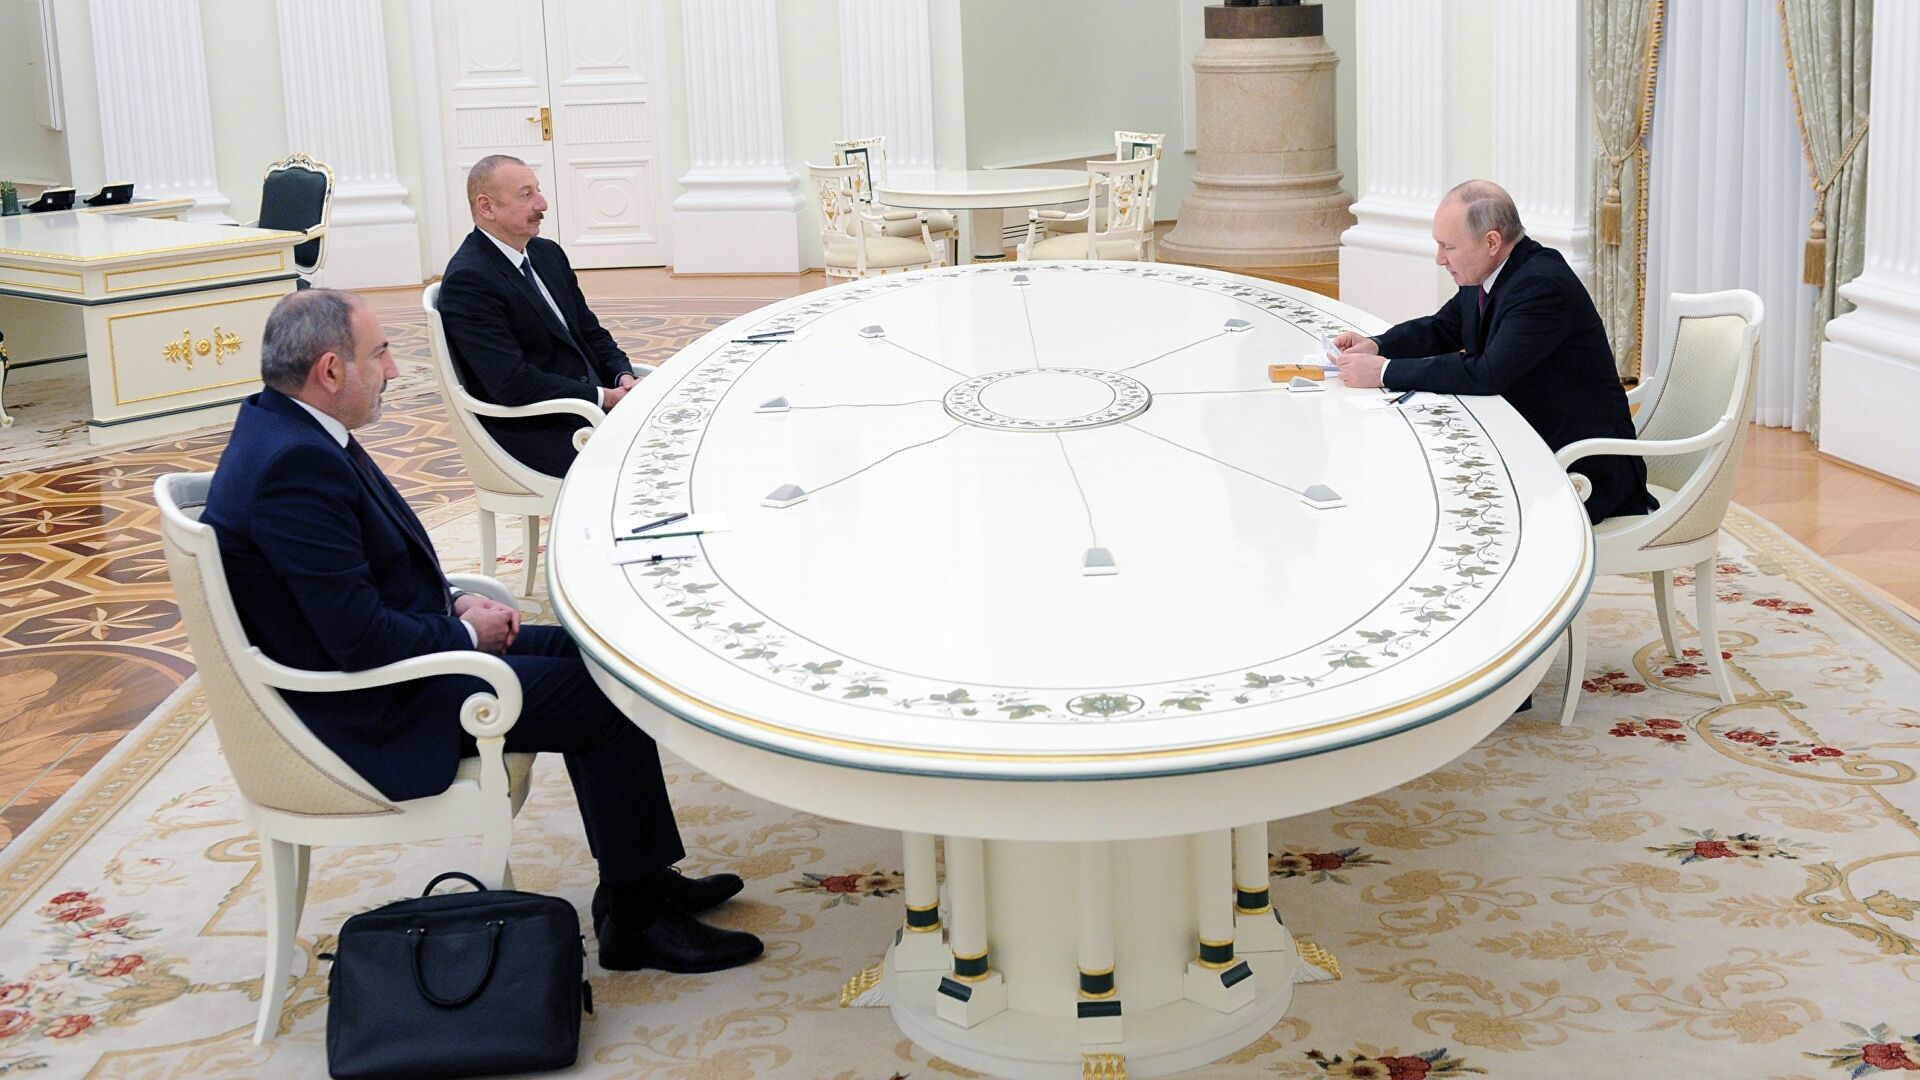 26 ноября в Сочи состоятся трёхсторонние переговоры Владимира Путина с Президентом Азербайджана Ильхамом Алиевым и Премьер-министром Армении Николом Пашиняном